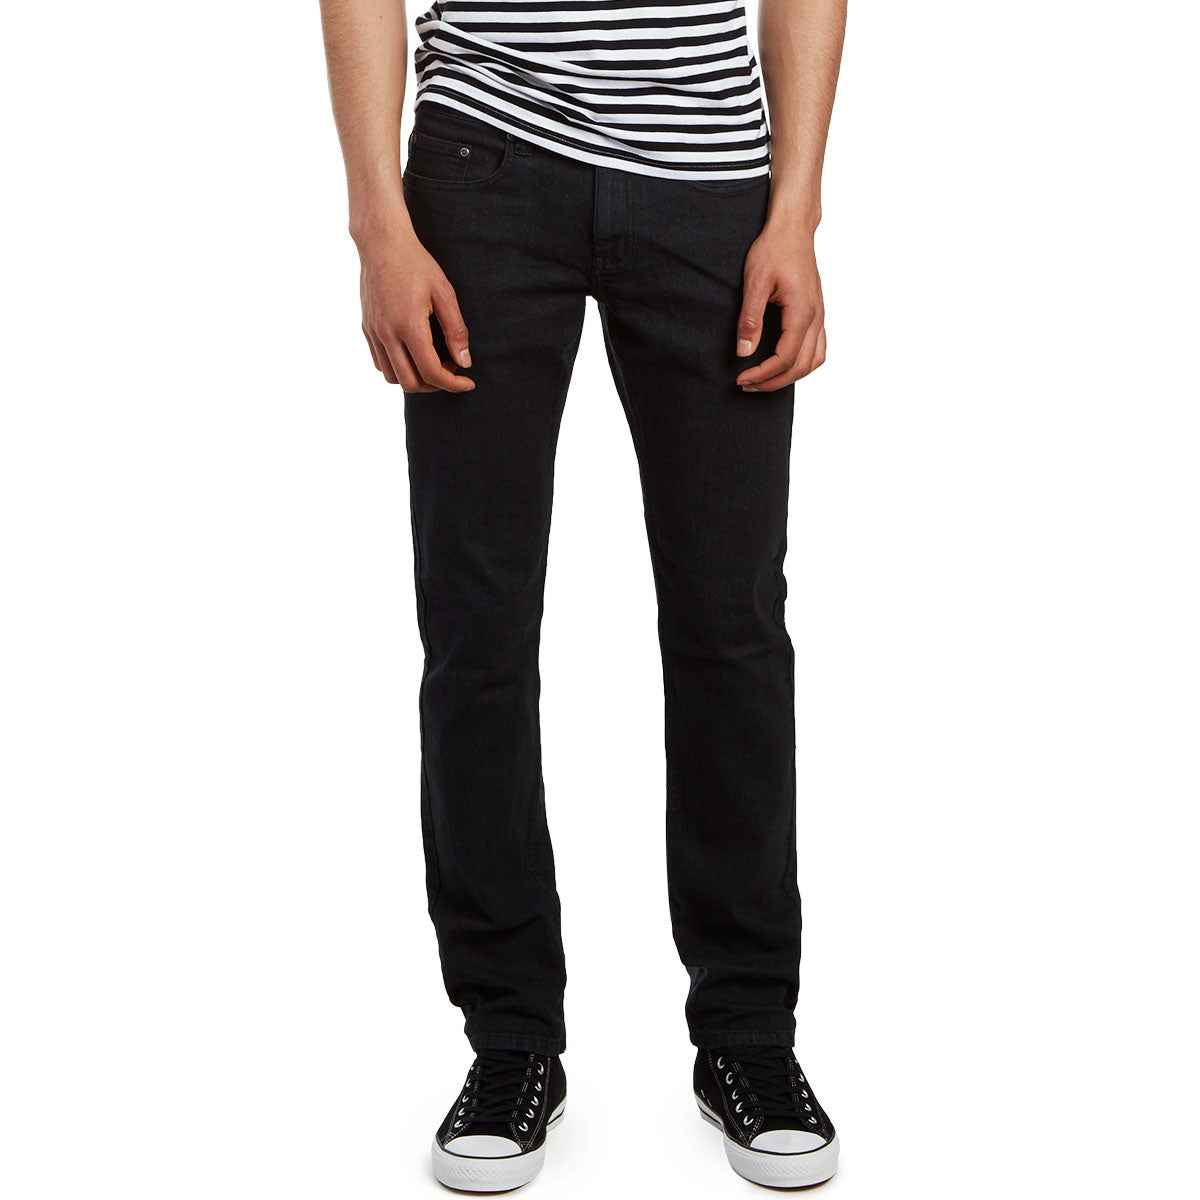 CCS Slim Fit Jeans - Washed Black image 4